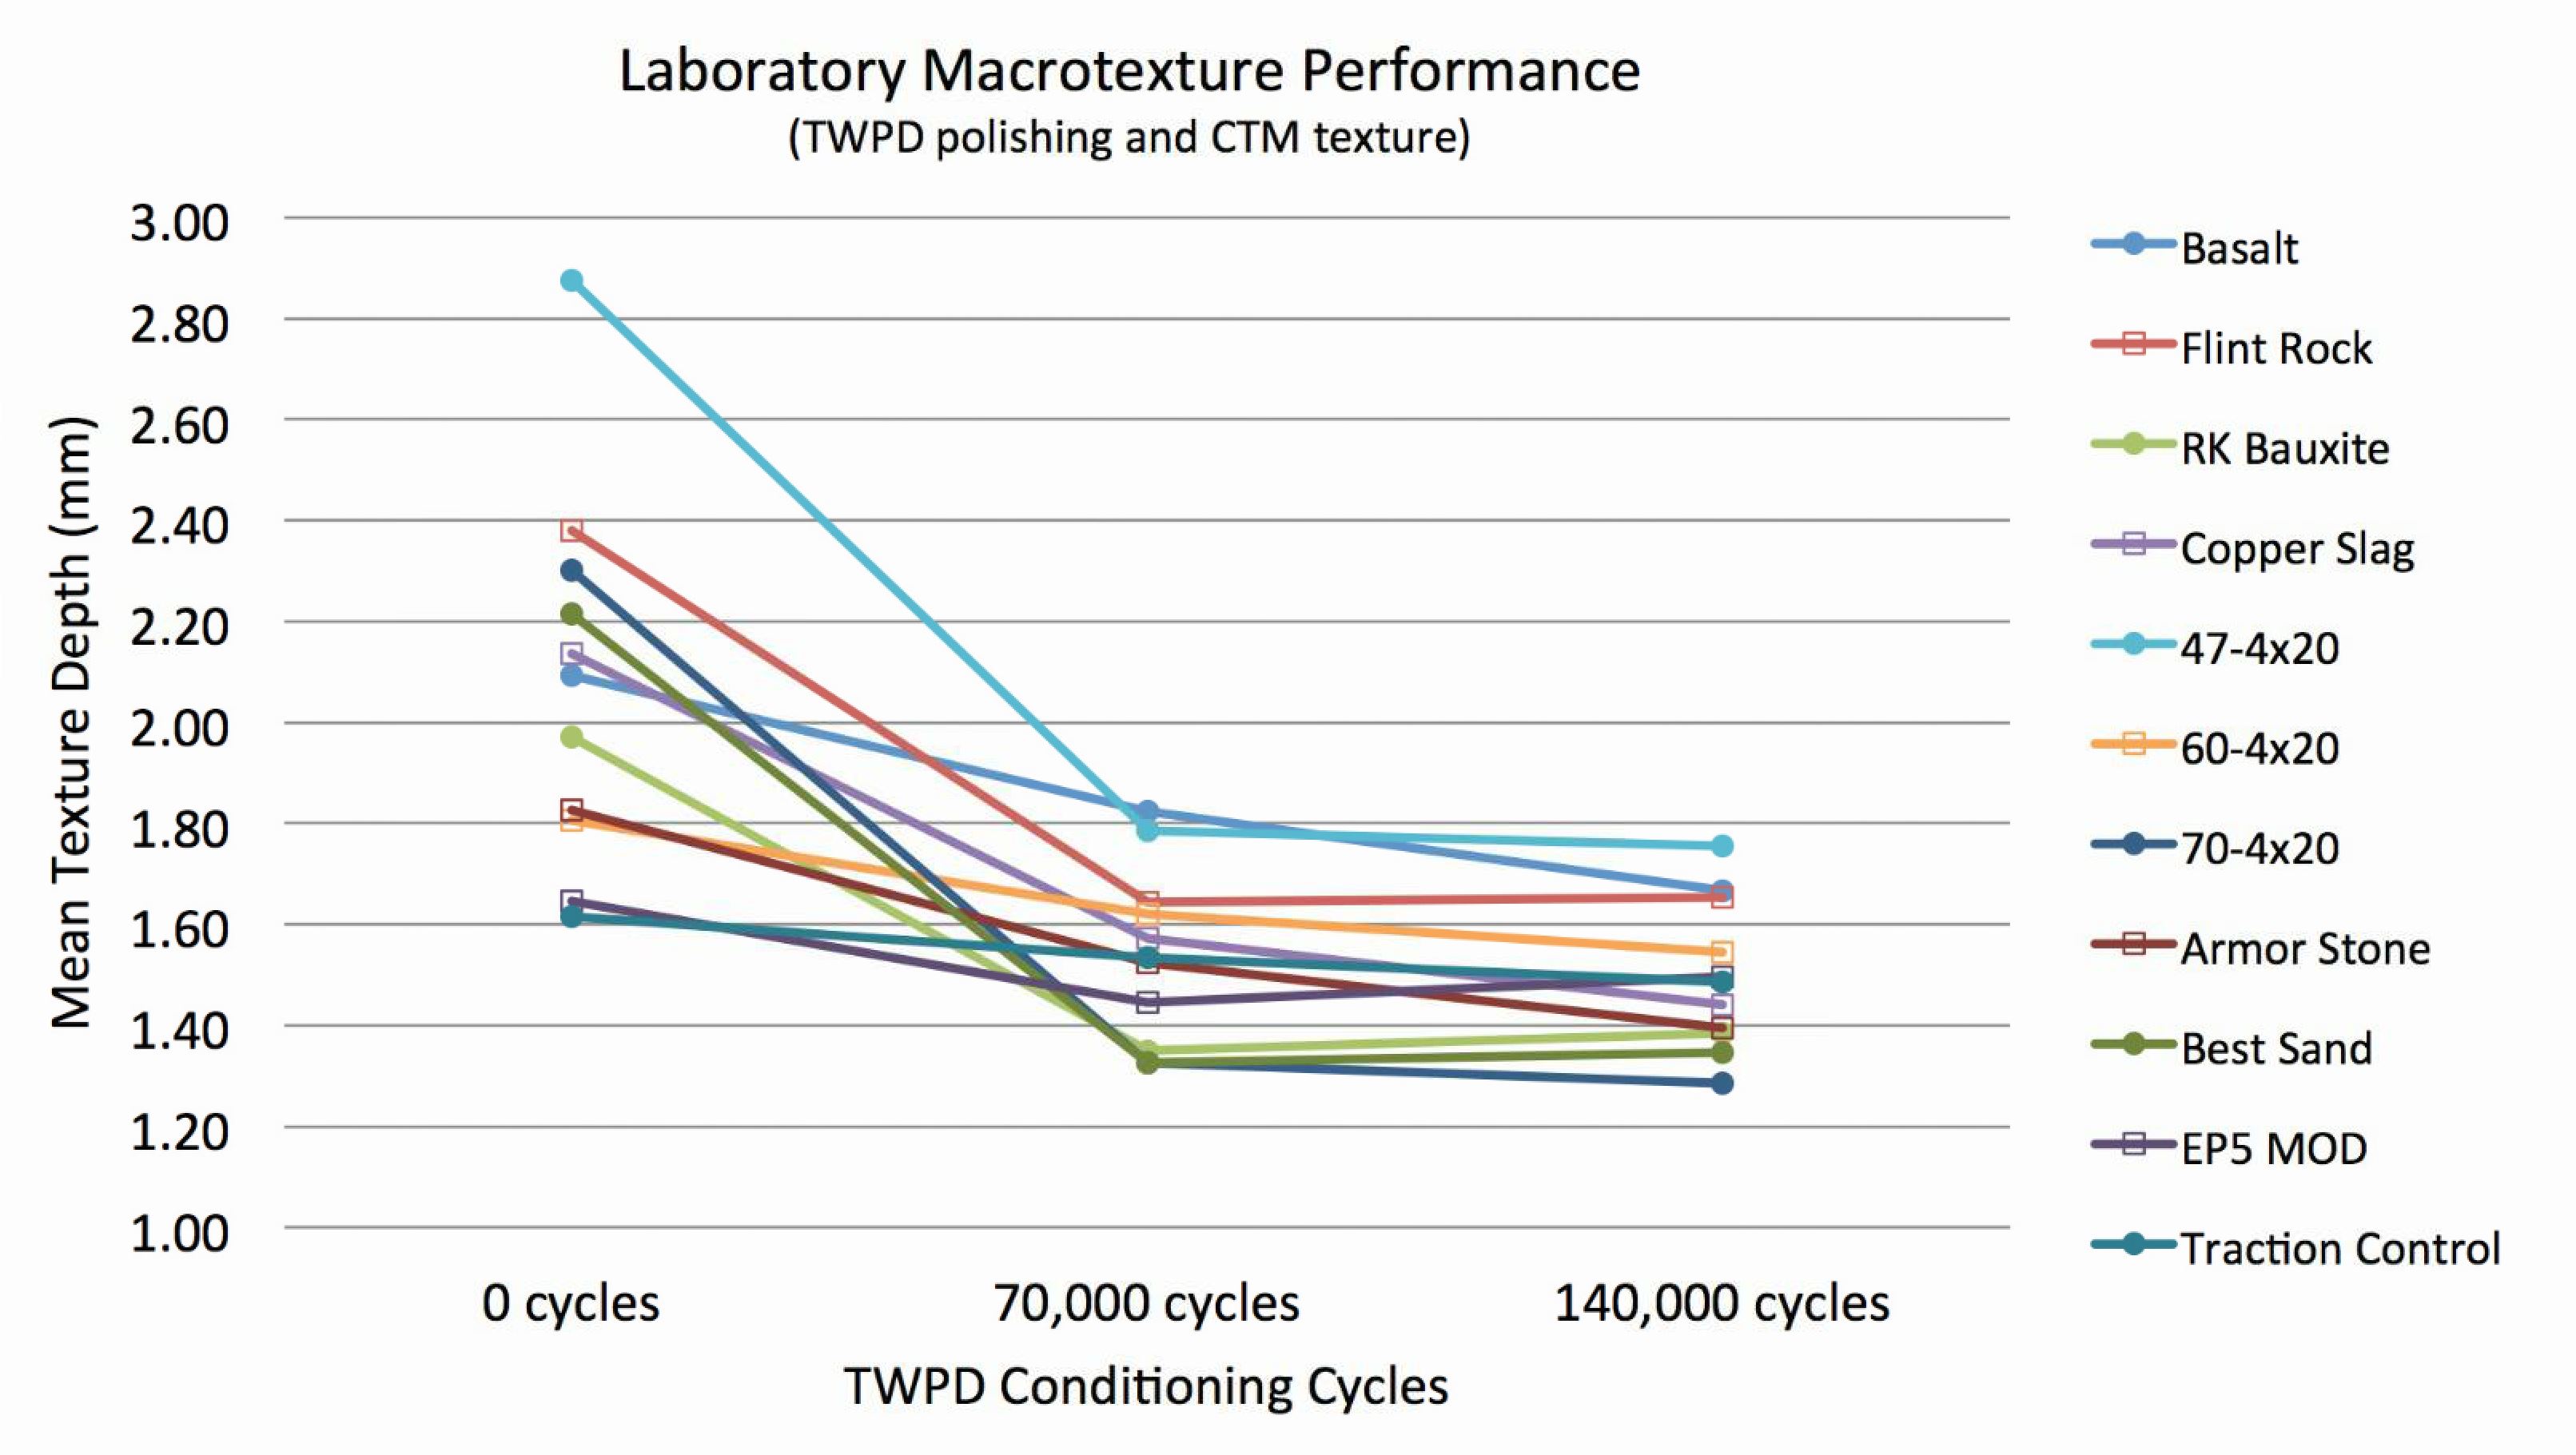 Figure 2. Comparison of Lab Surface Texture Performanc